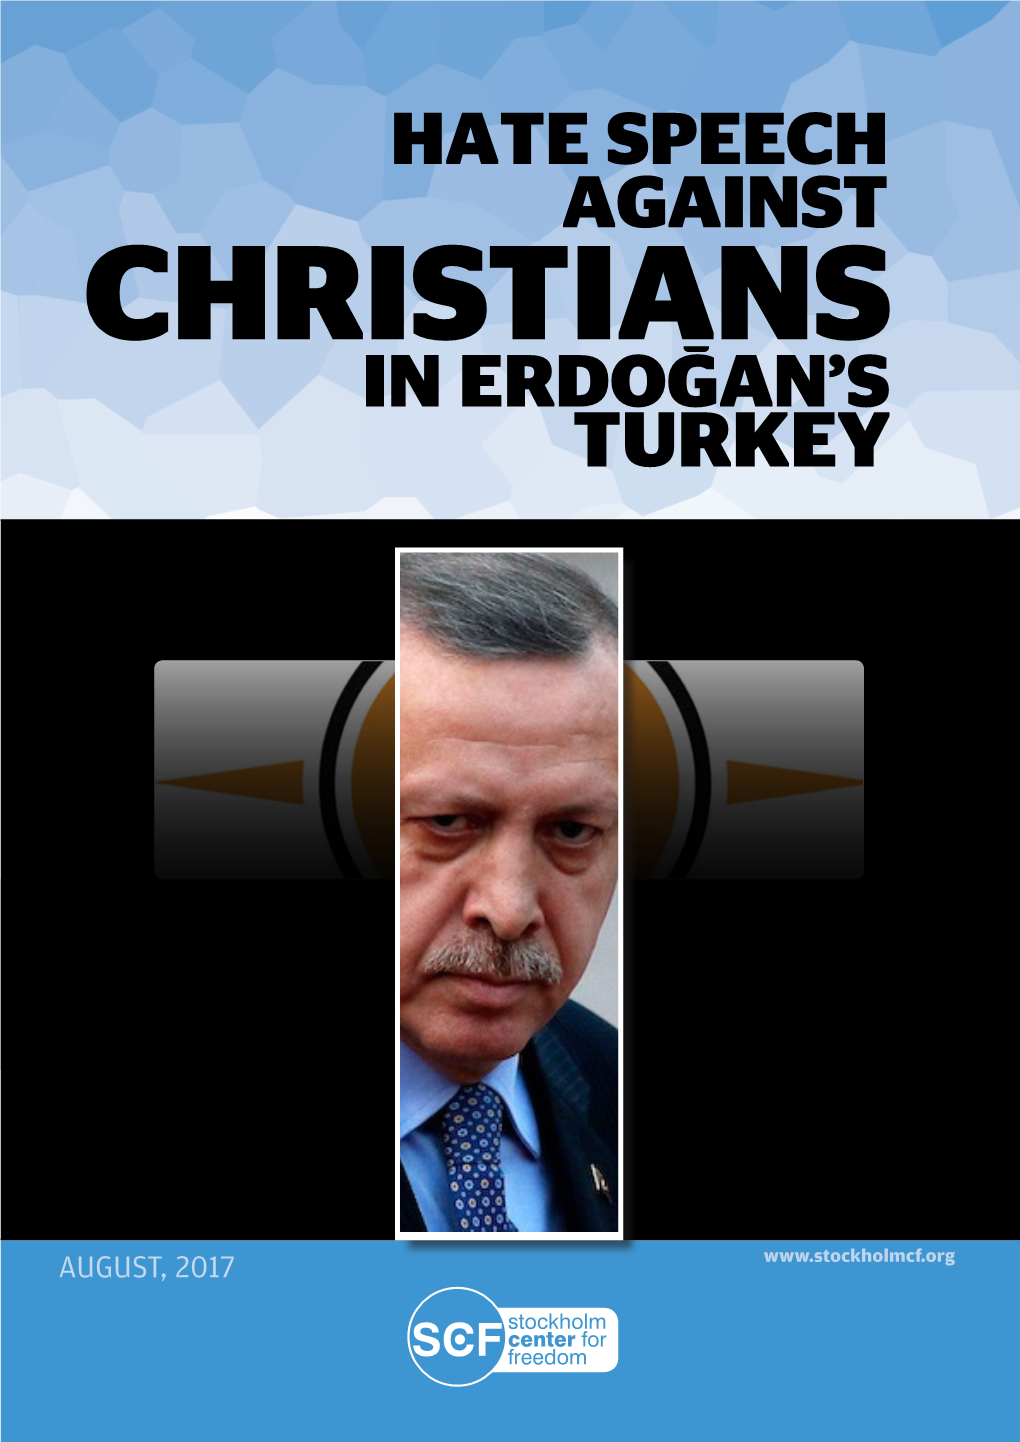 Christians Hate Speech Against in Erdoğan's Turkey